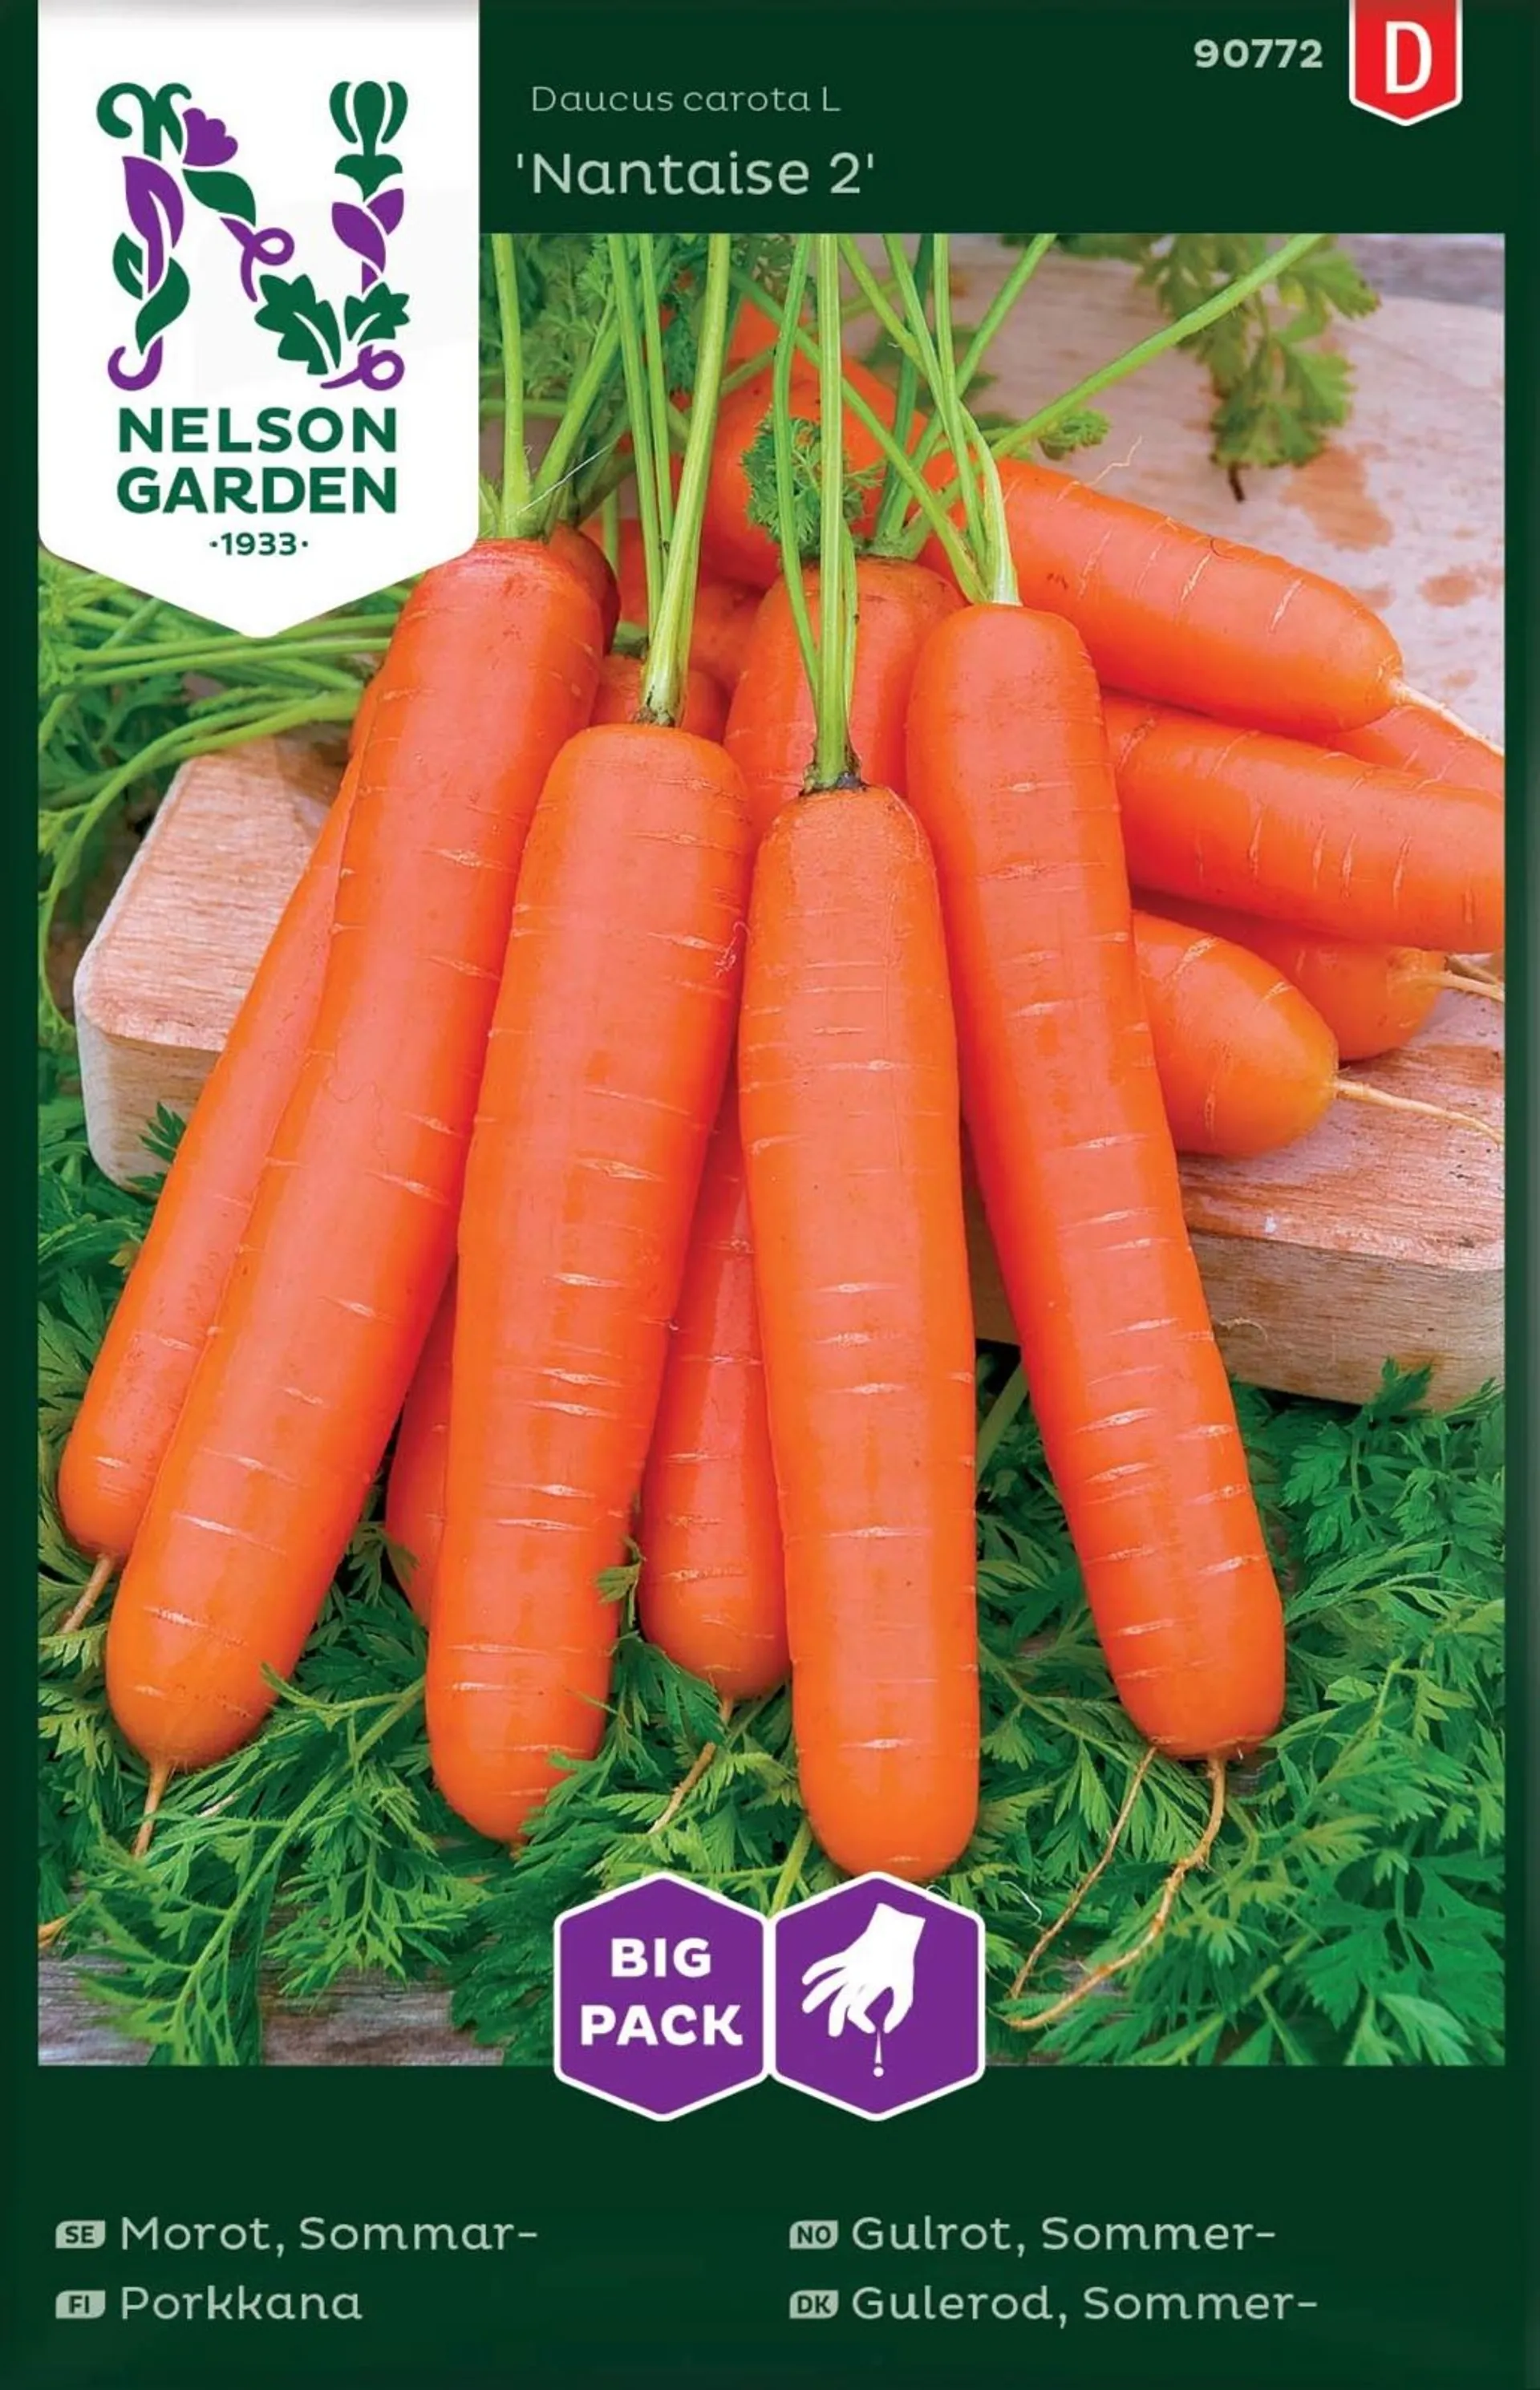 Nelson Garden Siemen Porkkana, Nantaise 2, Big Pack